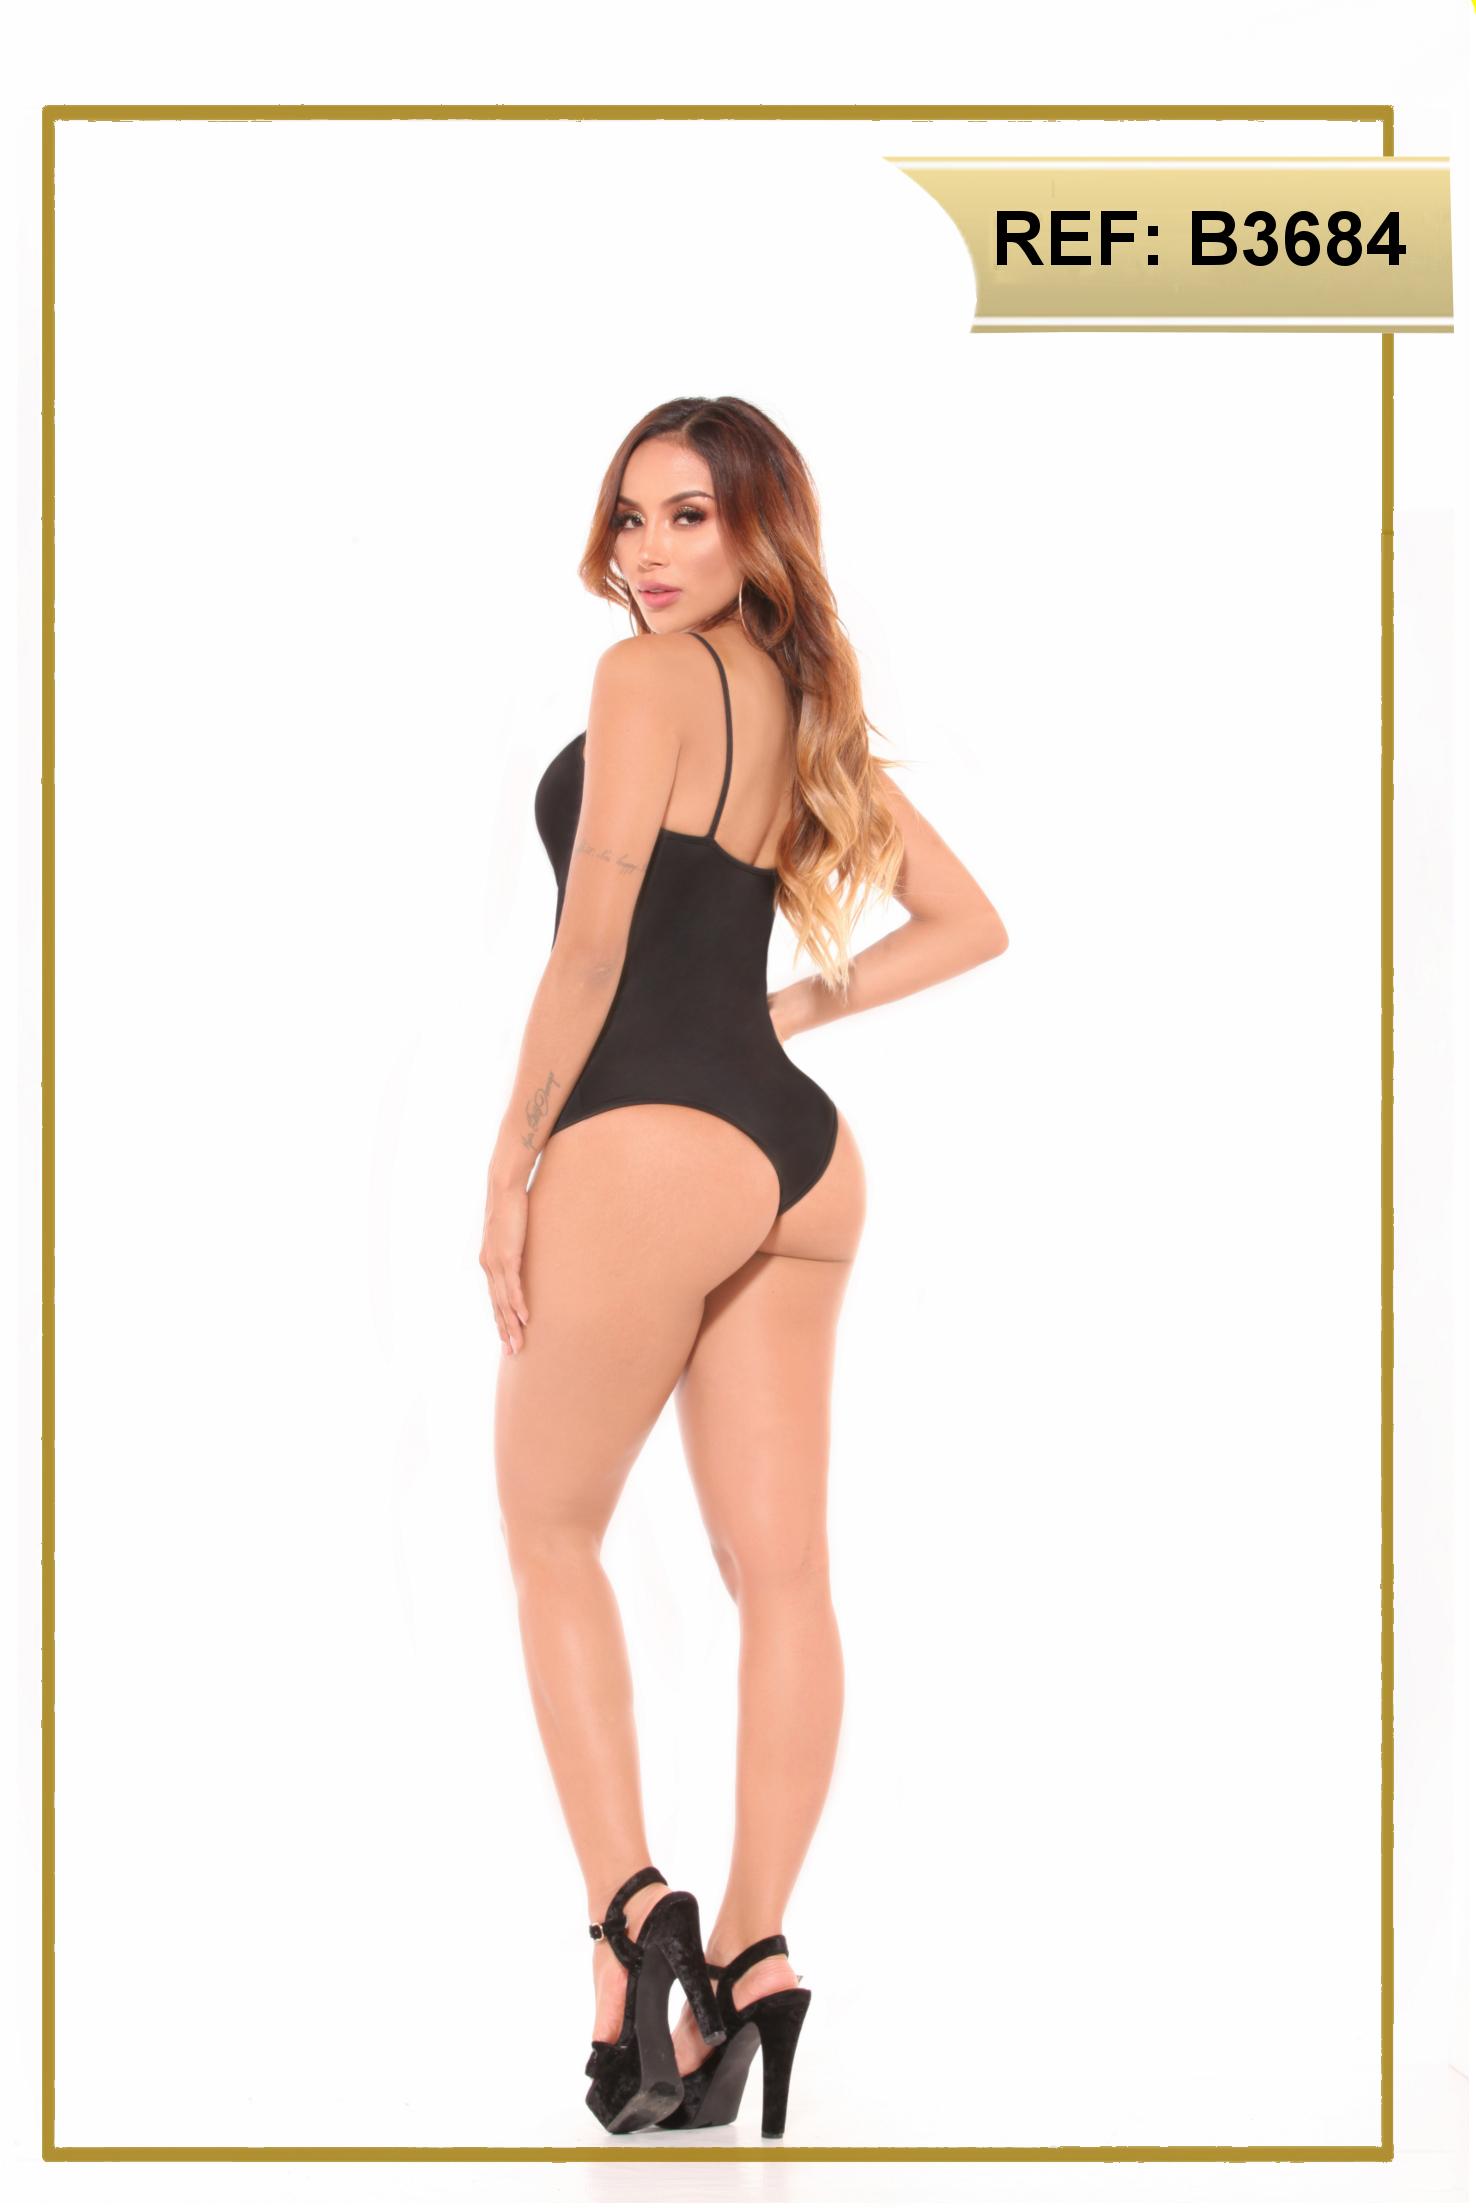 Comprar Body Súper Sexy Elaborado en Colombia, con sensacionales telas, encajes, detalles y acabados. 